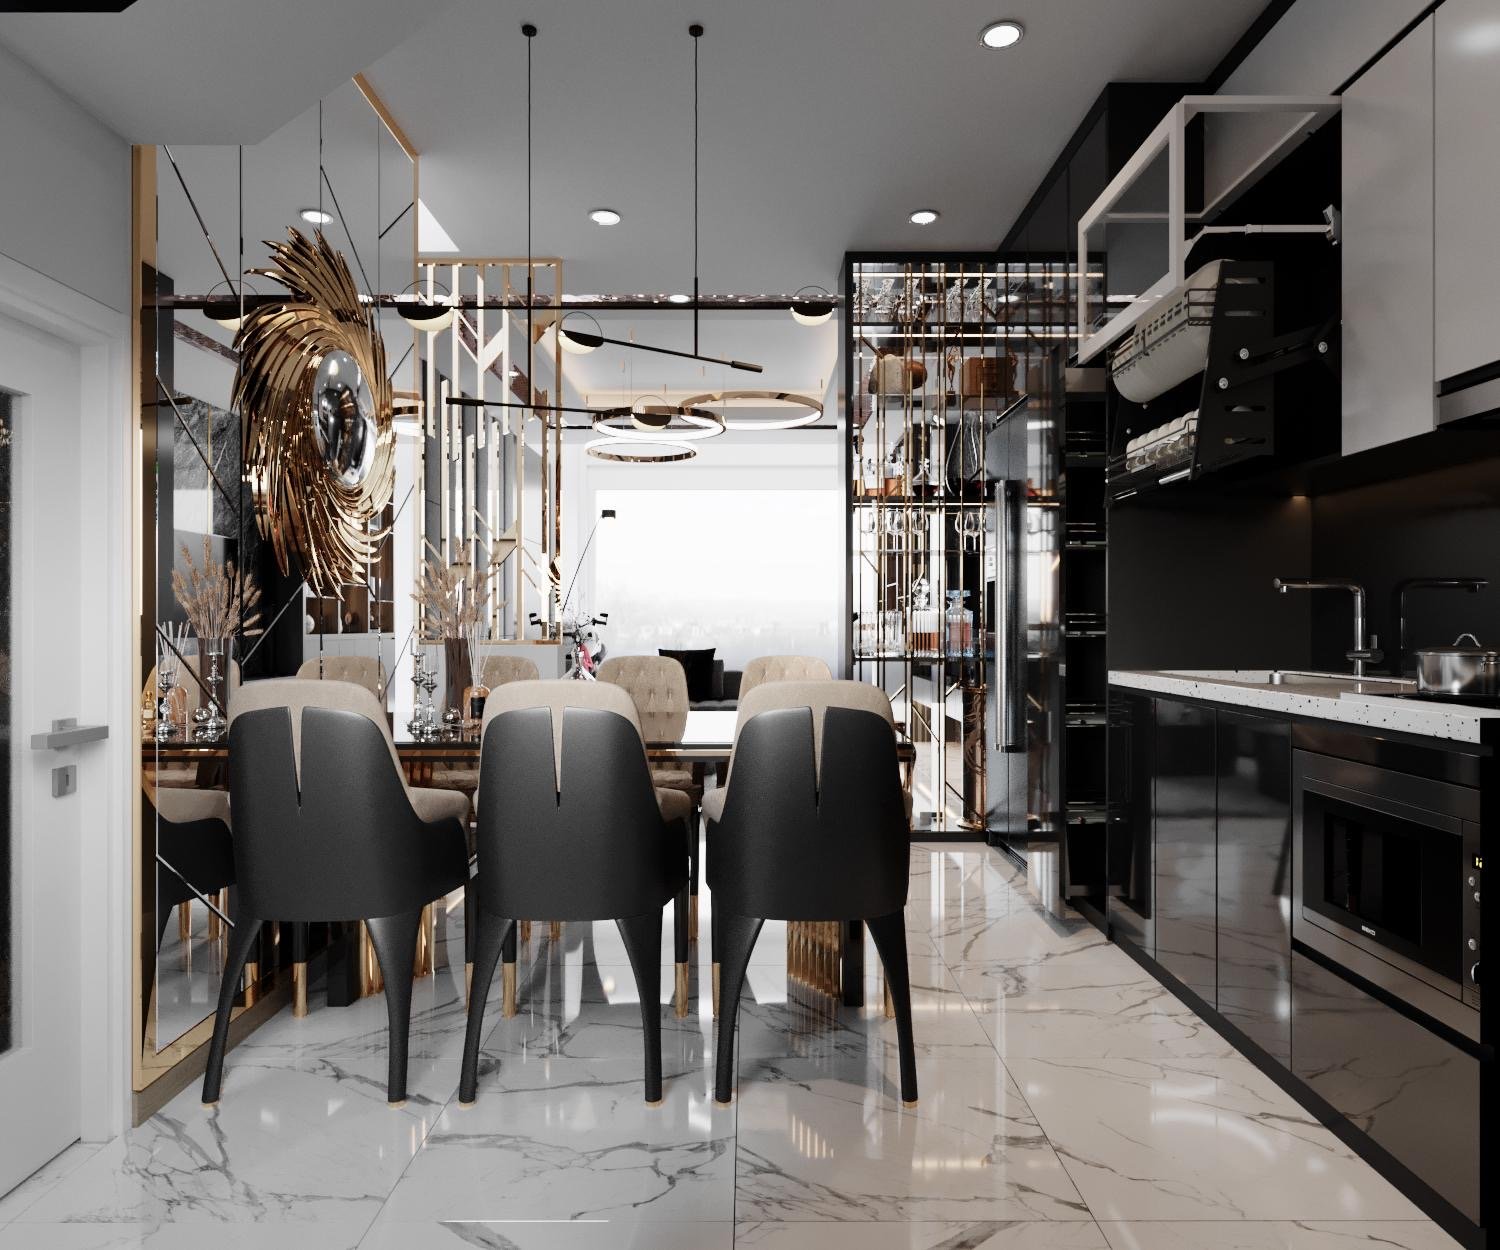 Phòng ăn, phong cách Hiện đại Modern, thiết kế concept nội thất, nhà phố Quận Bình Tân